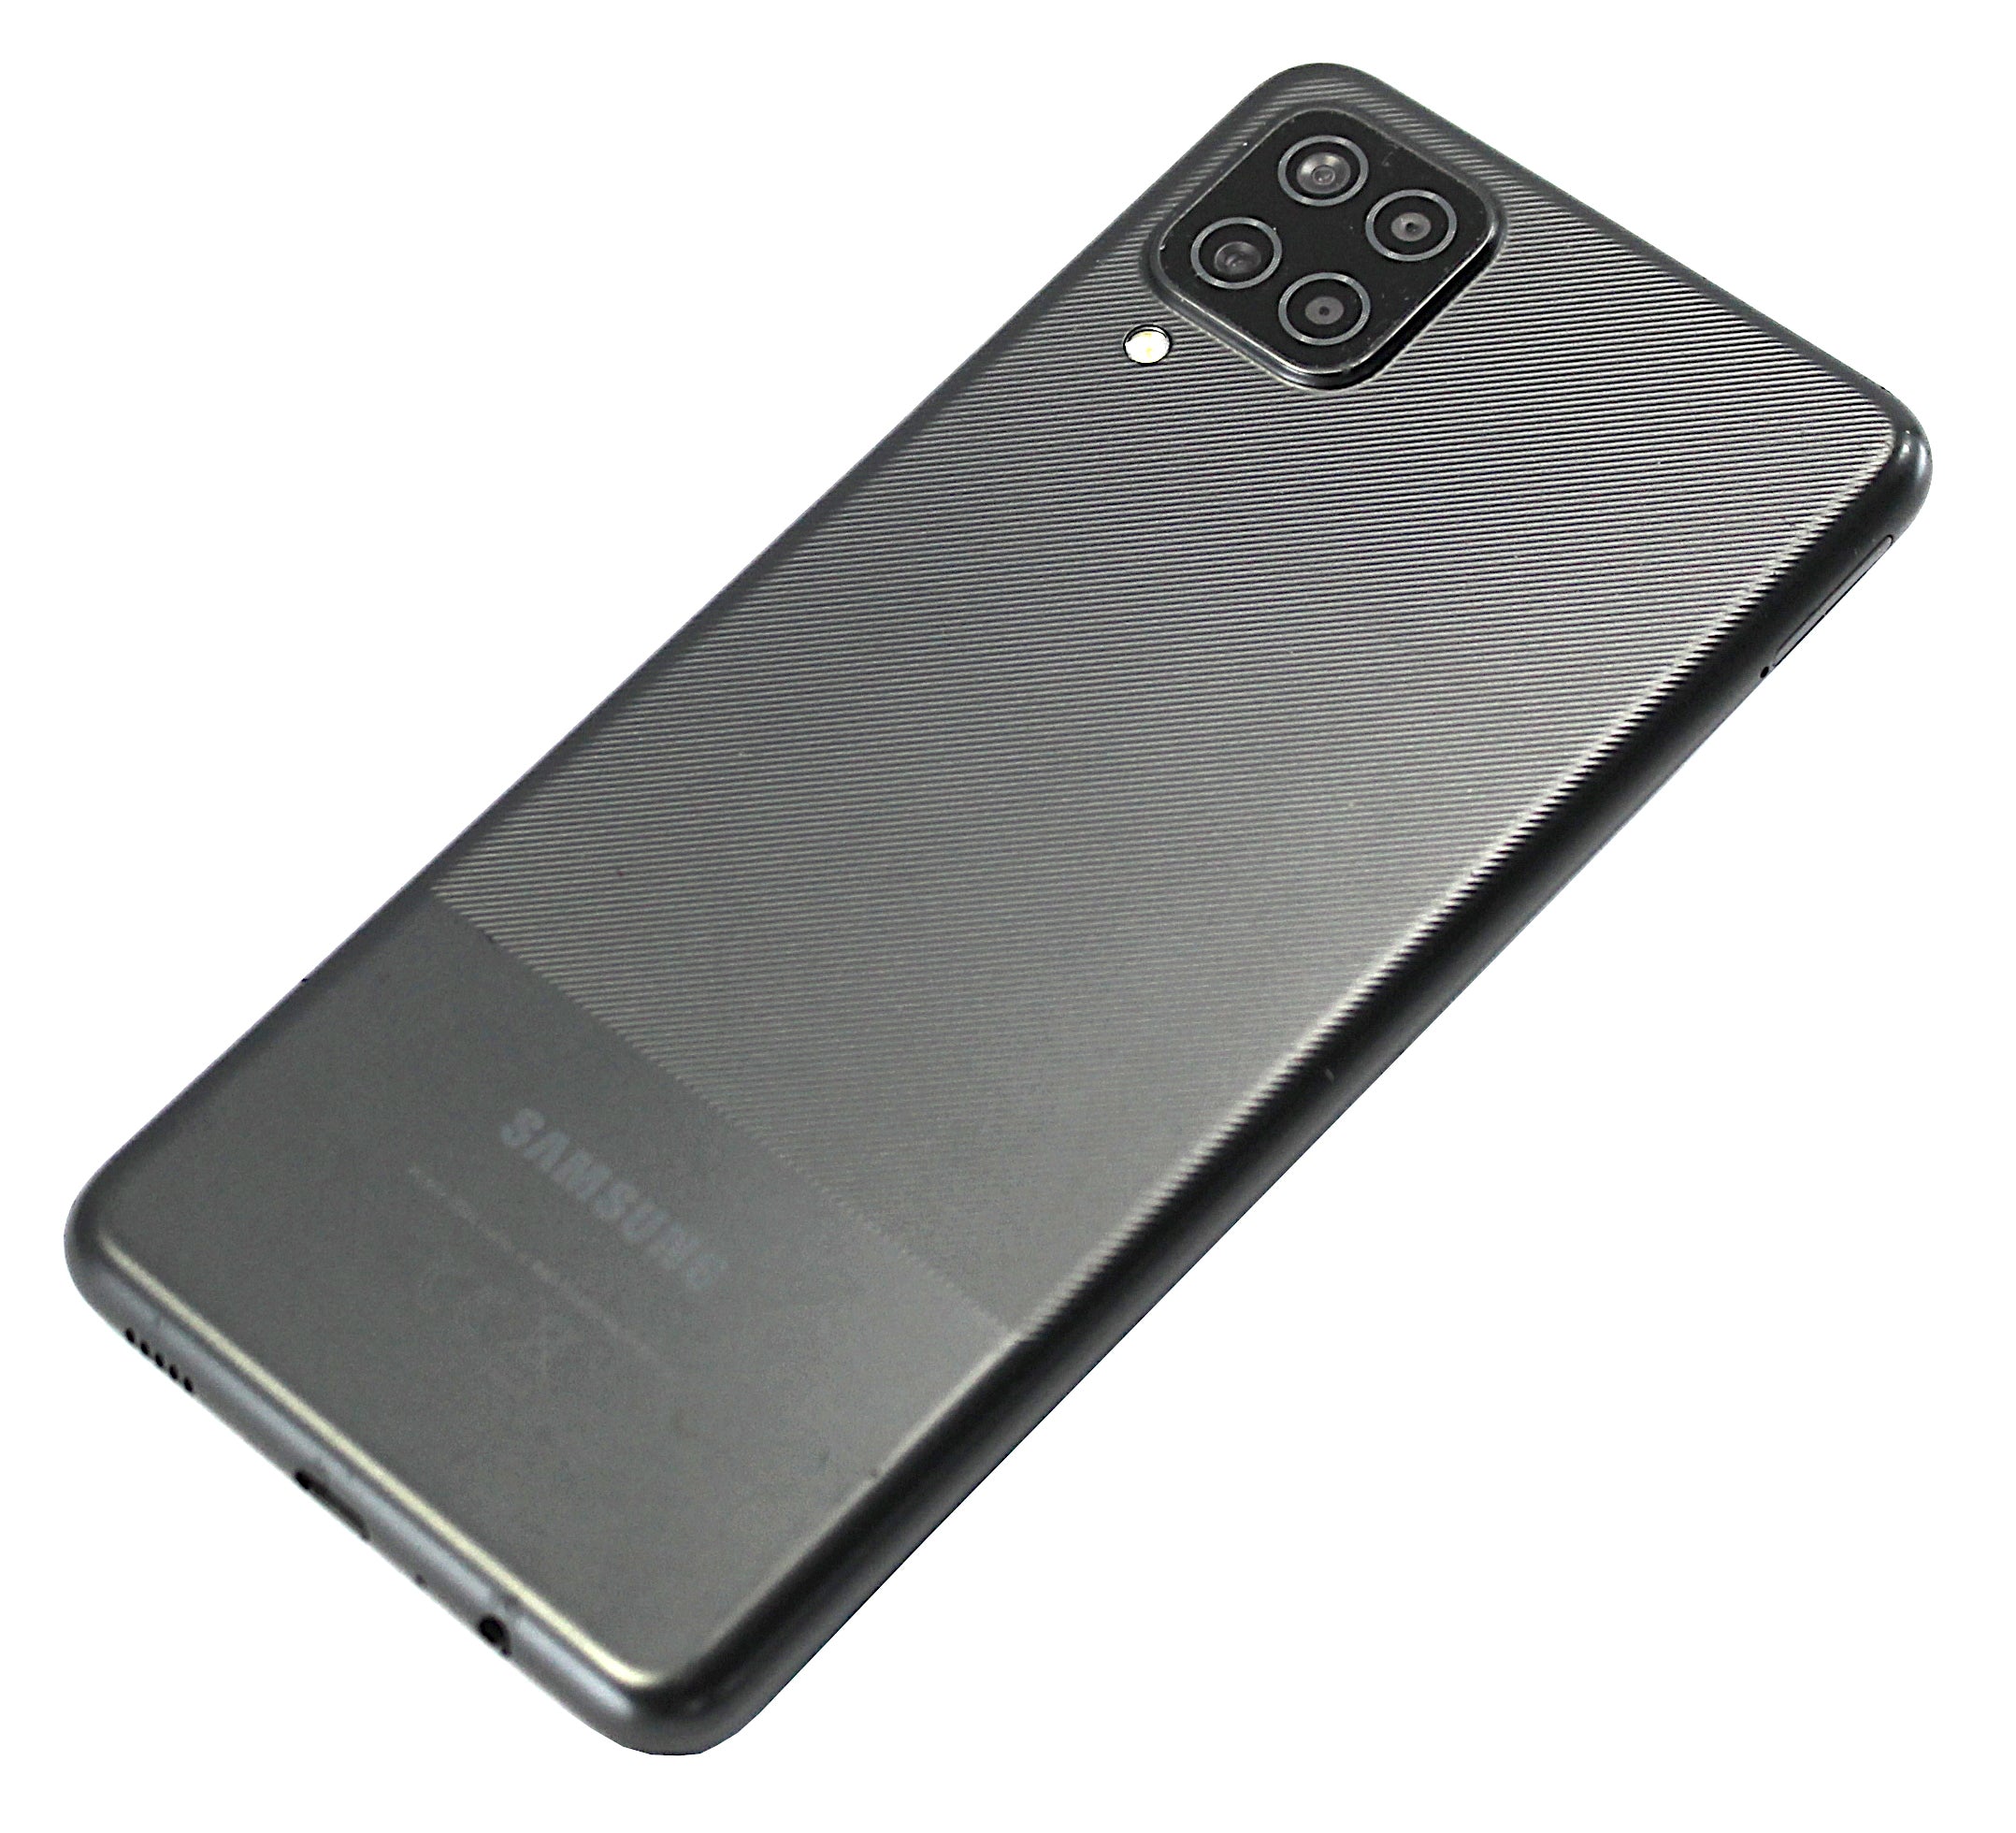 Samsung Galaxy A12 Smartphone, 64GB, Network Unlocked, Black, SM-A127F